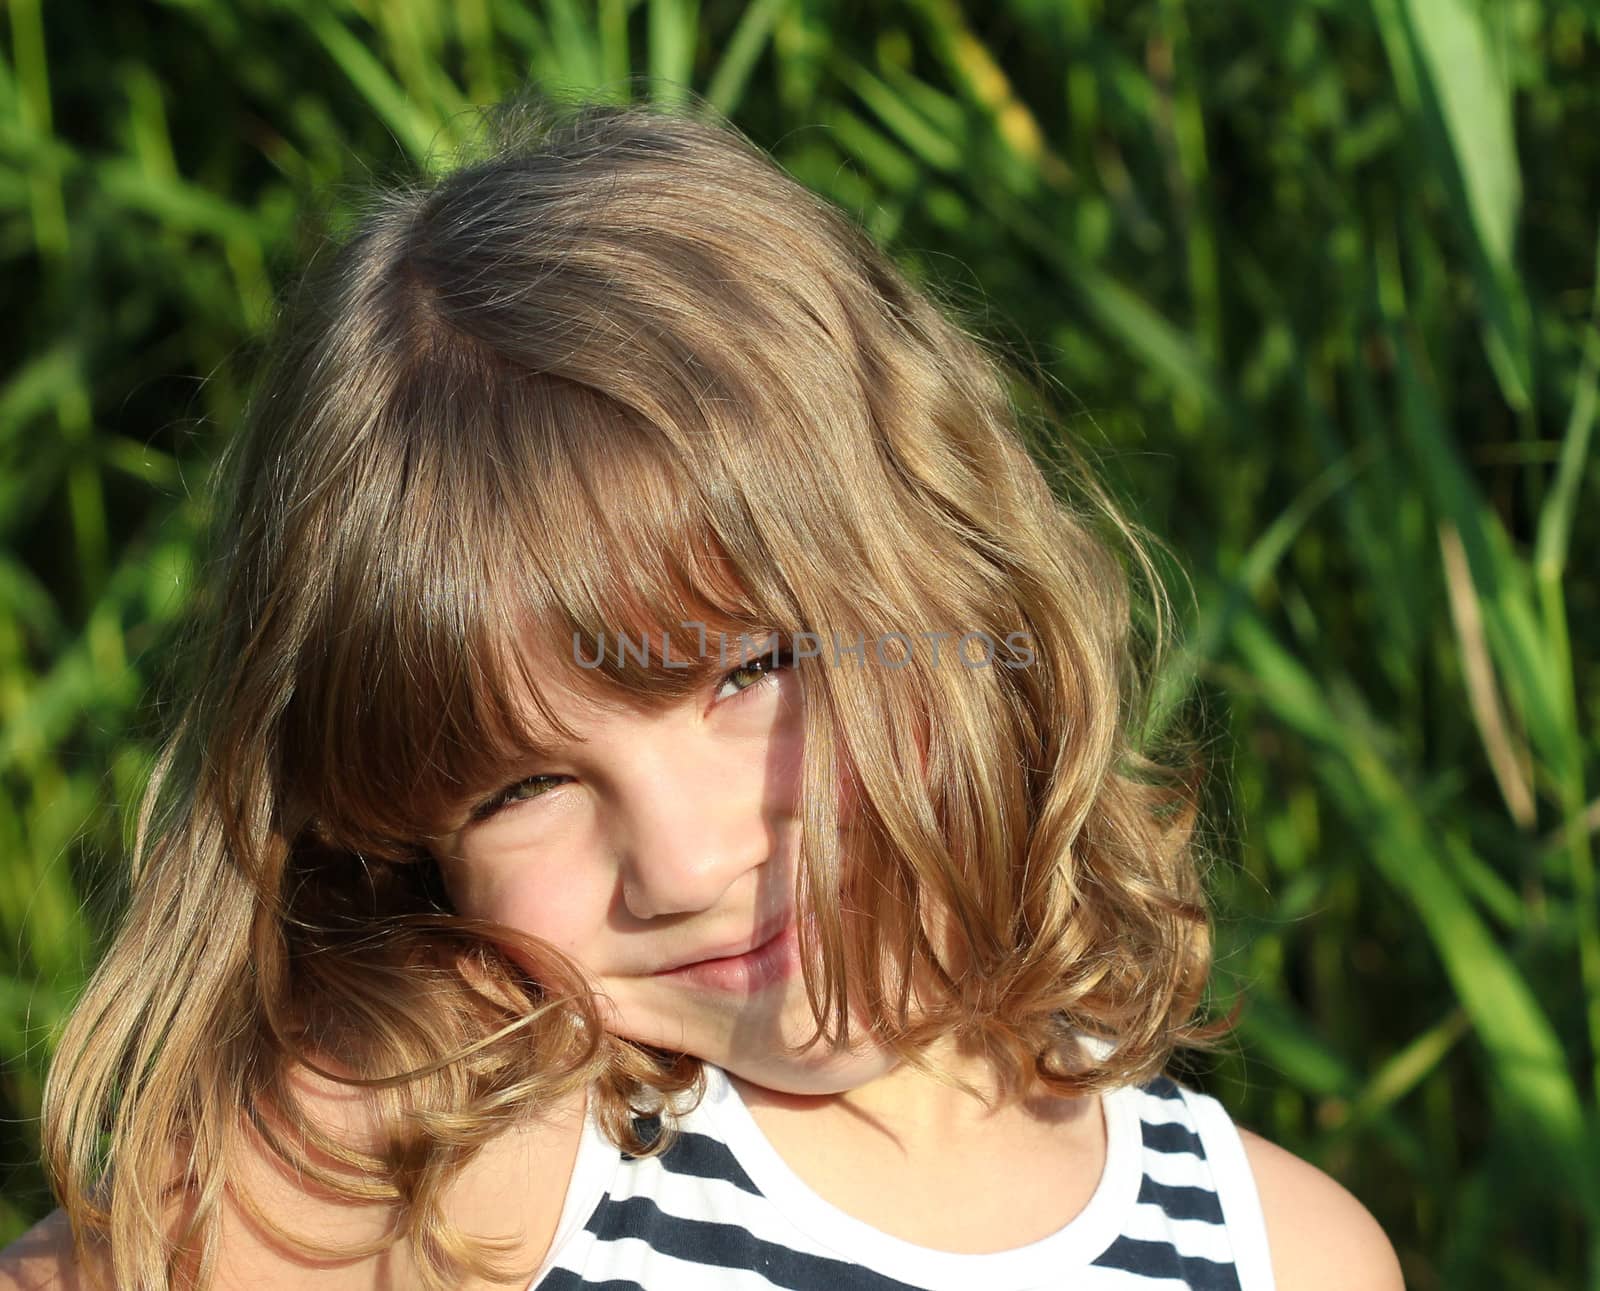 beautiful little girl outdoor portrait by goce